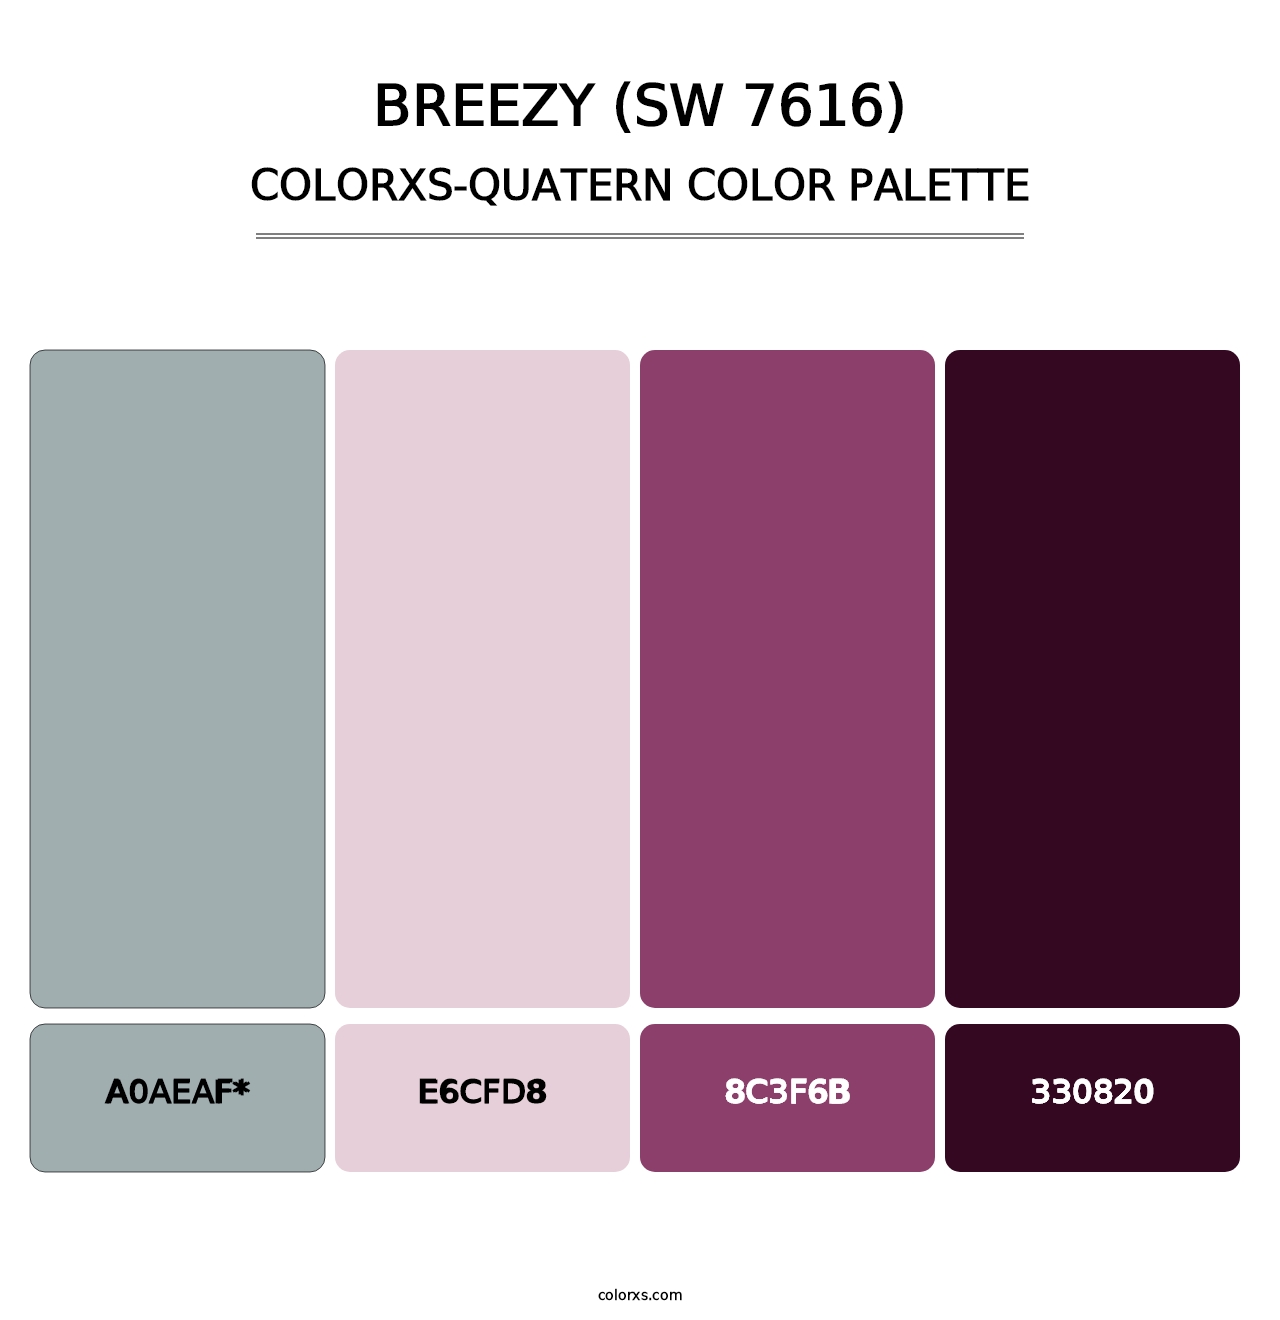 Breezy (SW 7616) - Colorxs Quatern Palette